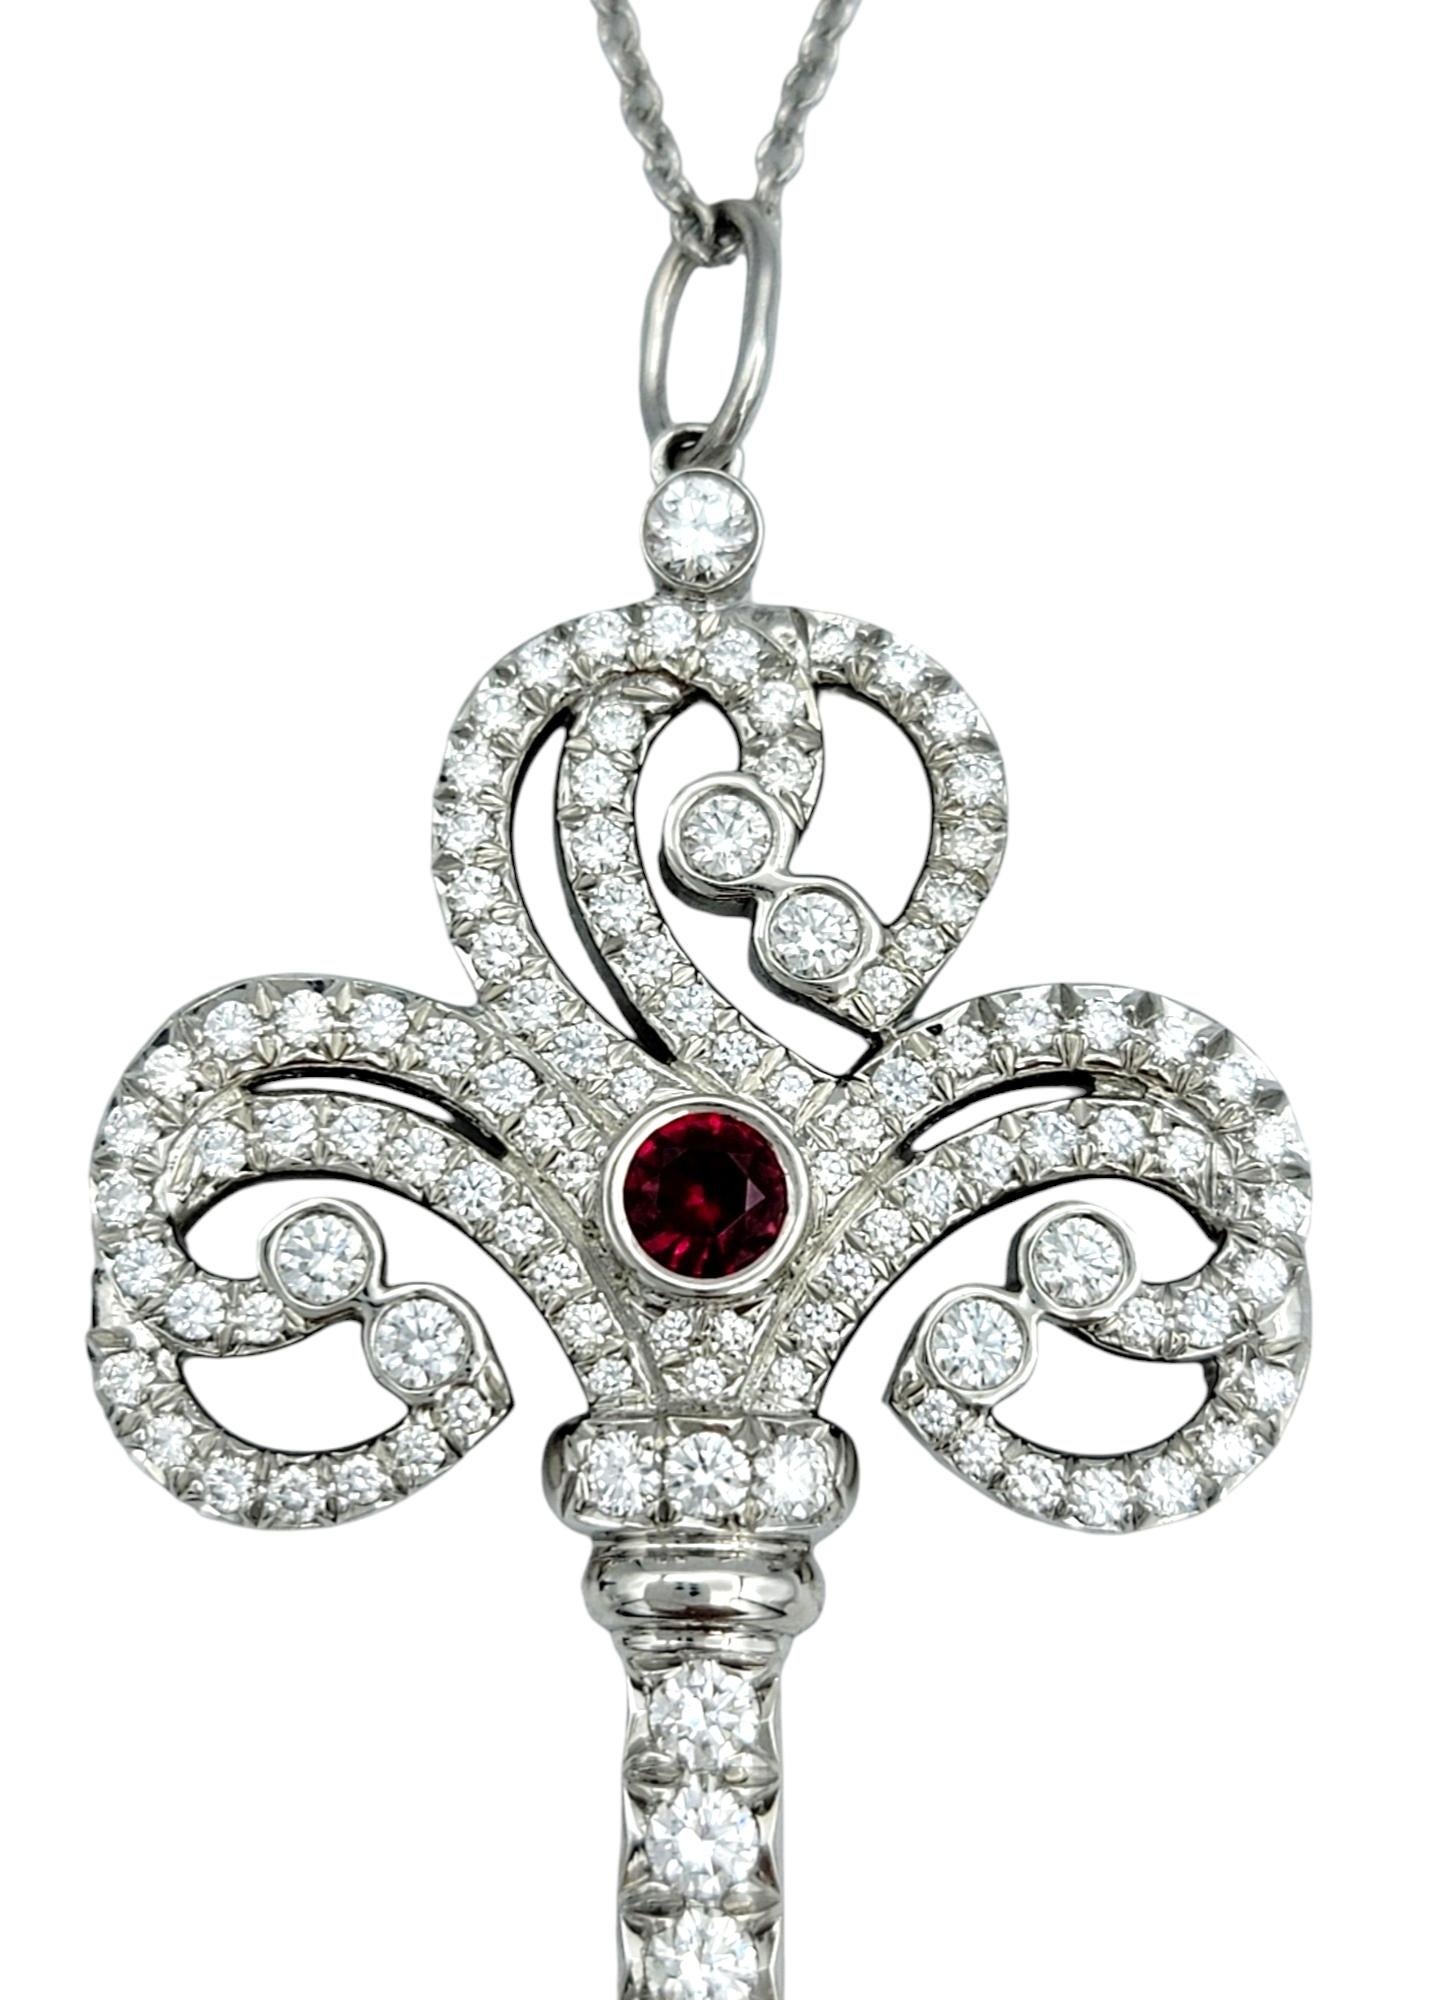 Dieser atemberaubende Schlüsselanhänger von Tiffany & Co. mit Diamanten und Rubinen ist ein elegantes Kunstwerk. Der aus glänzendem Platin gefertigte Schlüsselanhänger strahlt einen Hauch von Luxus aus. Das Herzstück des Schlüssels ist ein